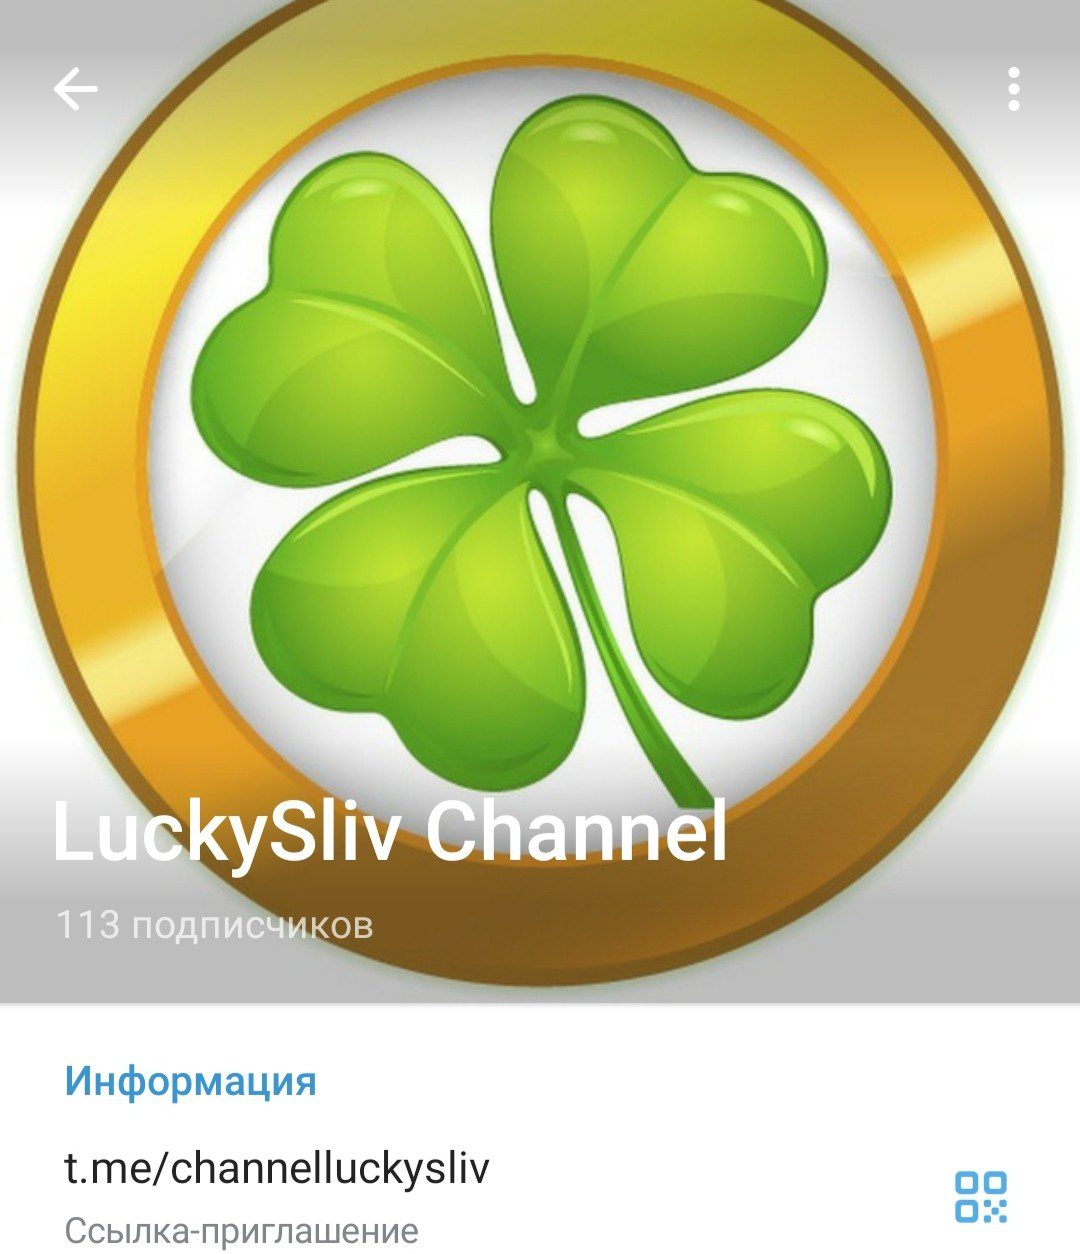 LuckySliv Channel телеграм